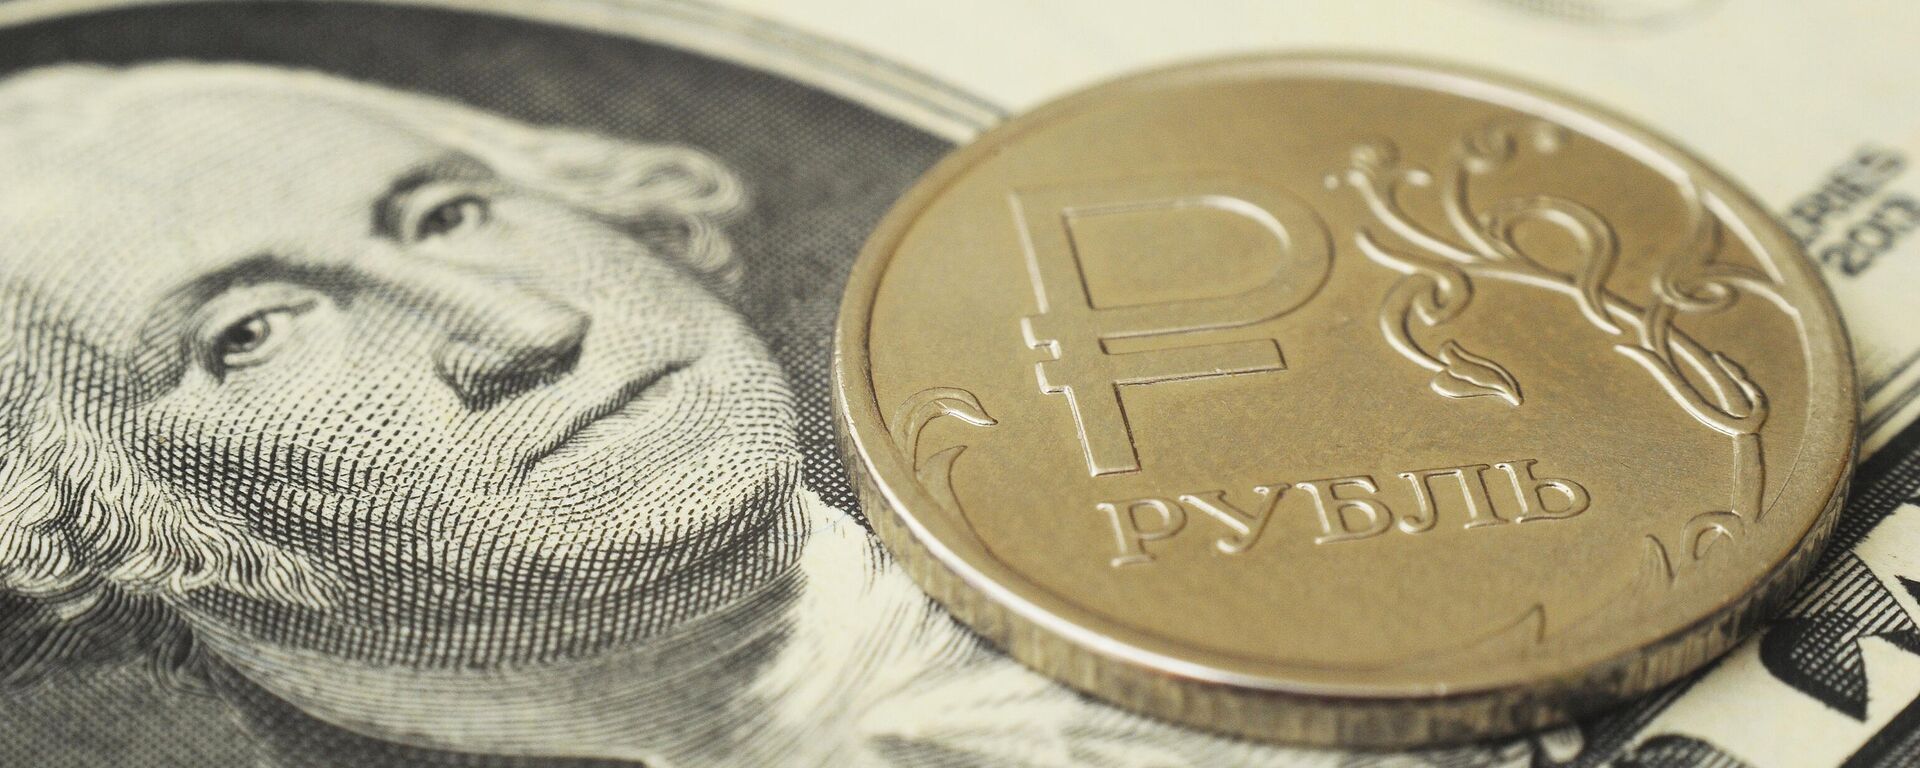 Монета номиналом один рубль на банкноте один доллар США. - Sputnik Абхазия, 1920, 28.02.2023